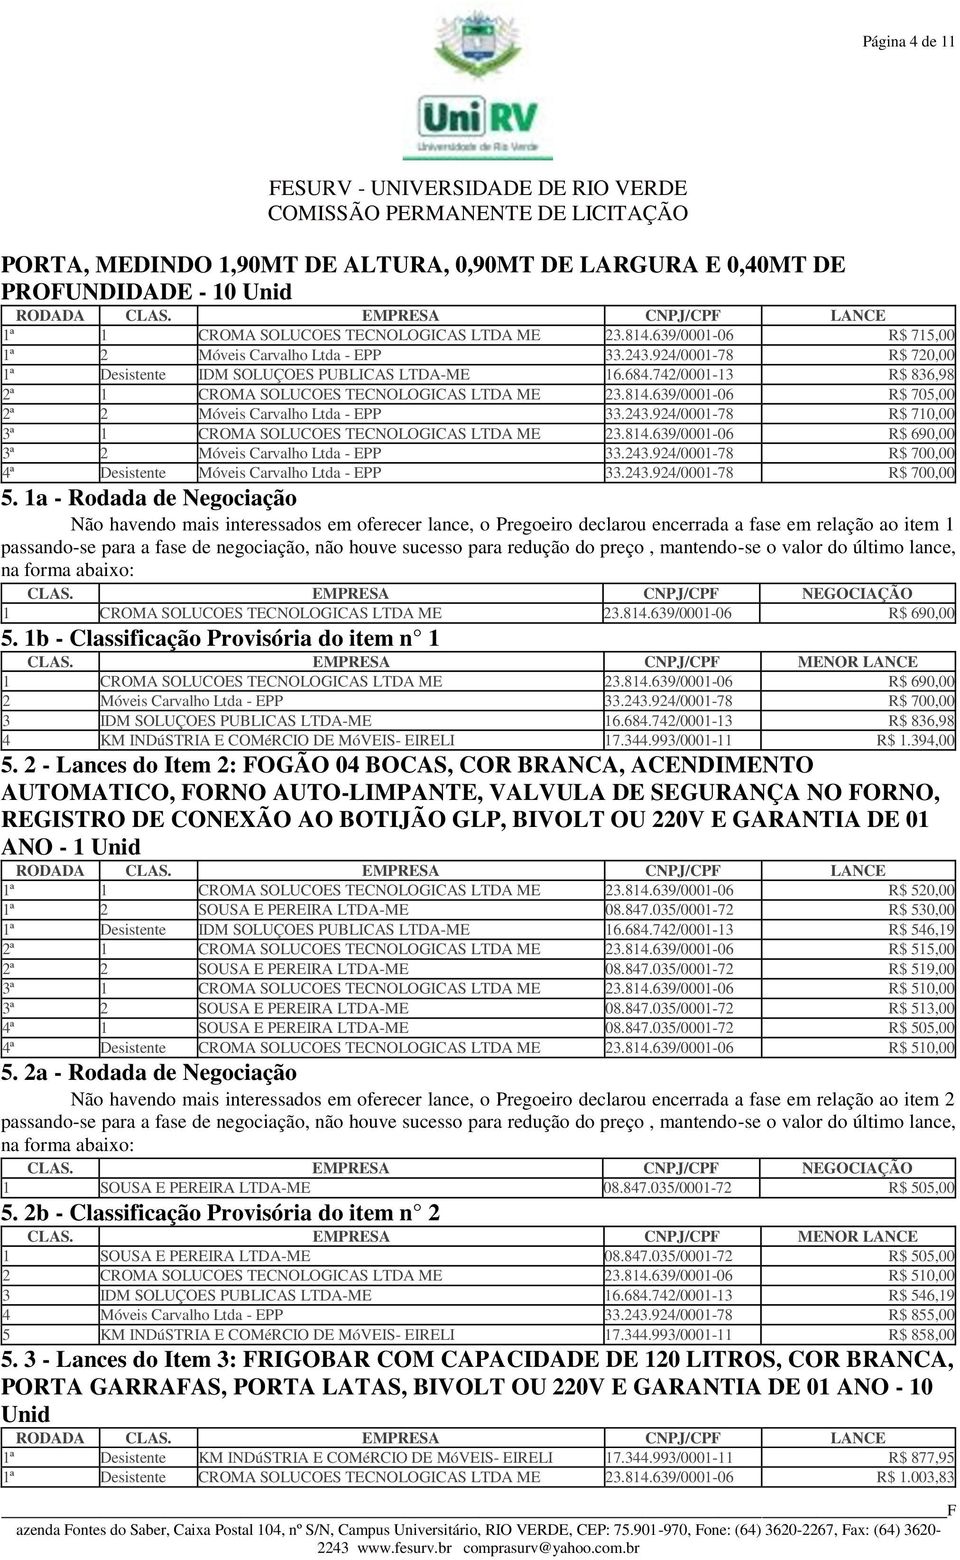 .9/000-78 R$ 700,00 ª Desistente Móveis Carvalho Ltda - EPP..9/000-78 R$ 700,00 5.